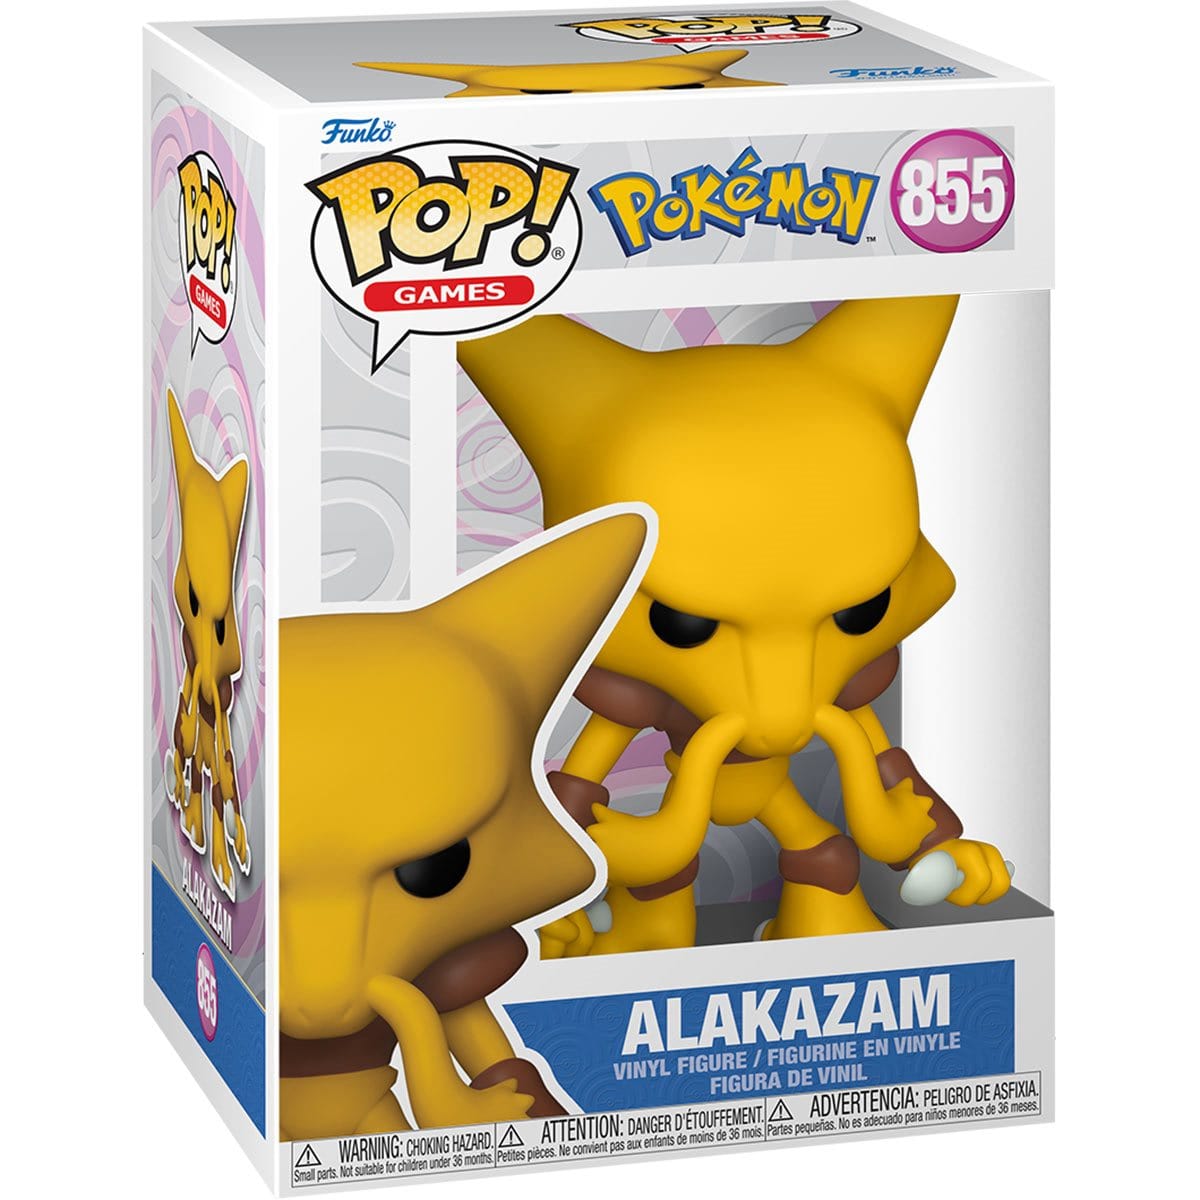 Pokémon Alakazam Pop! Vinyl Figure